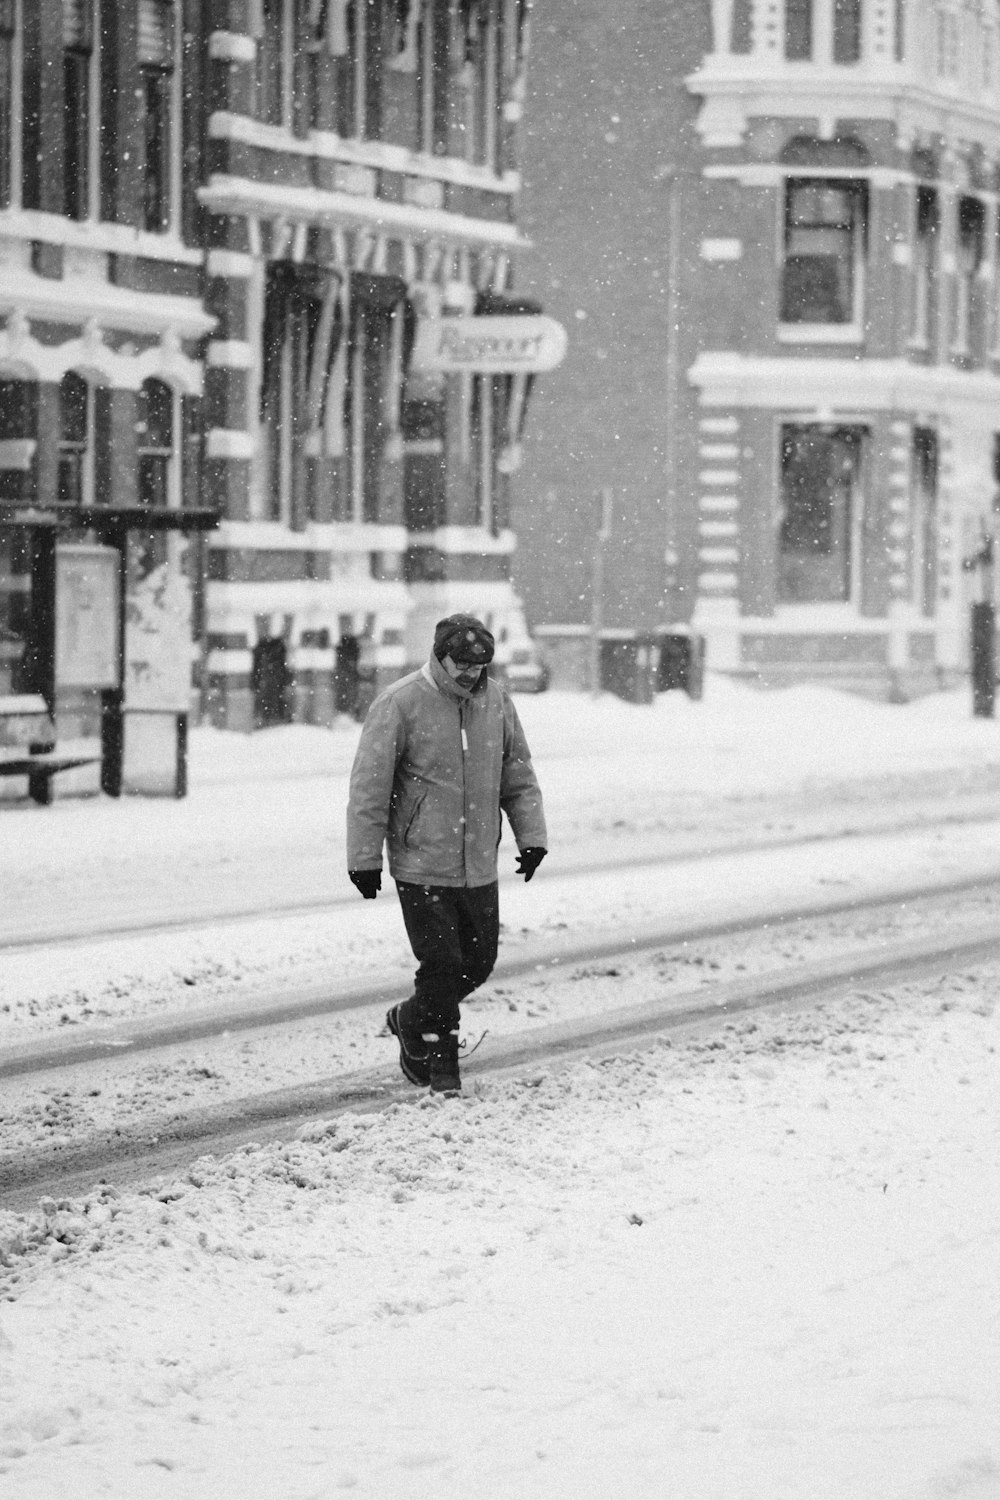 Mann im grauen Mantel auf schneebedecktem Boden